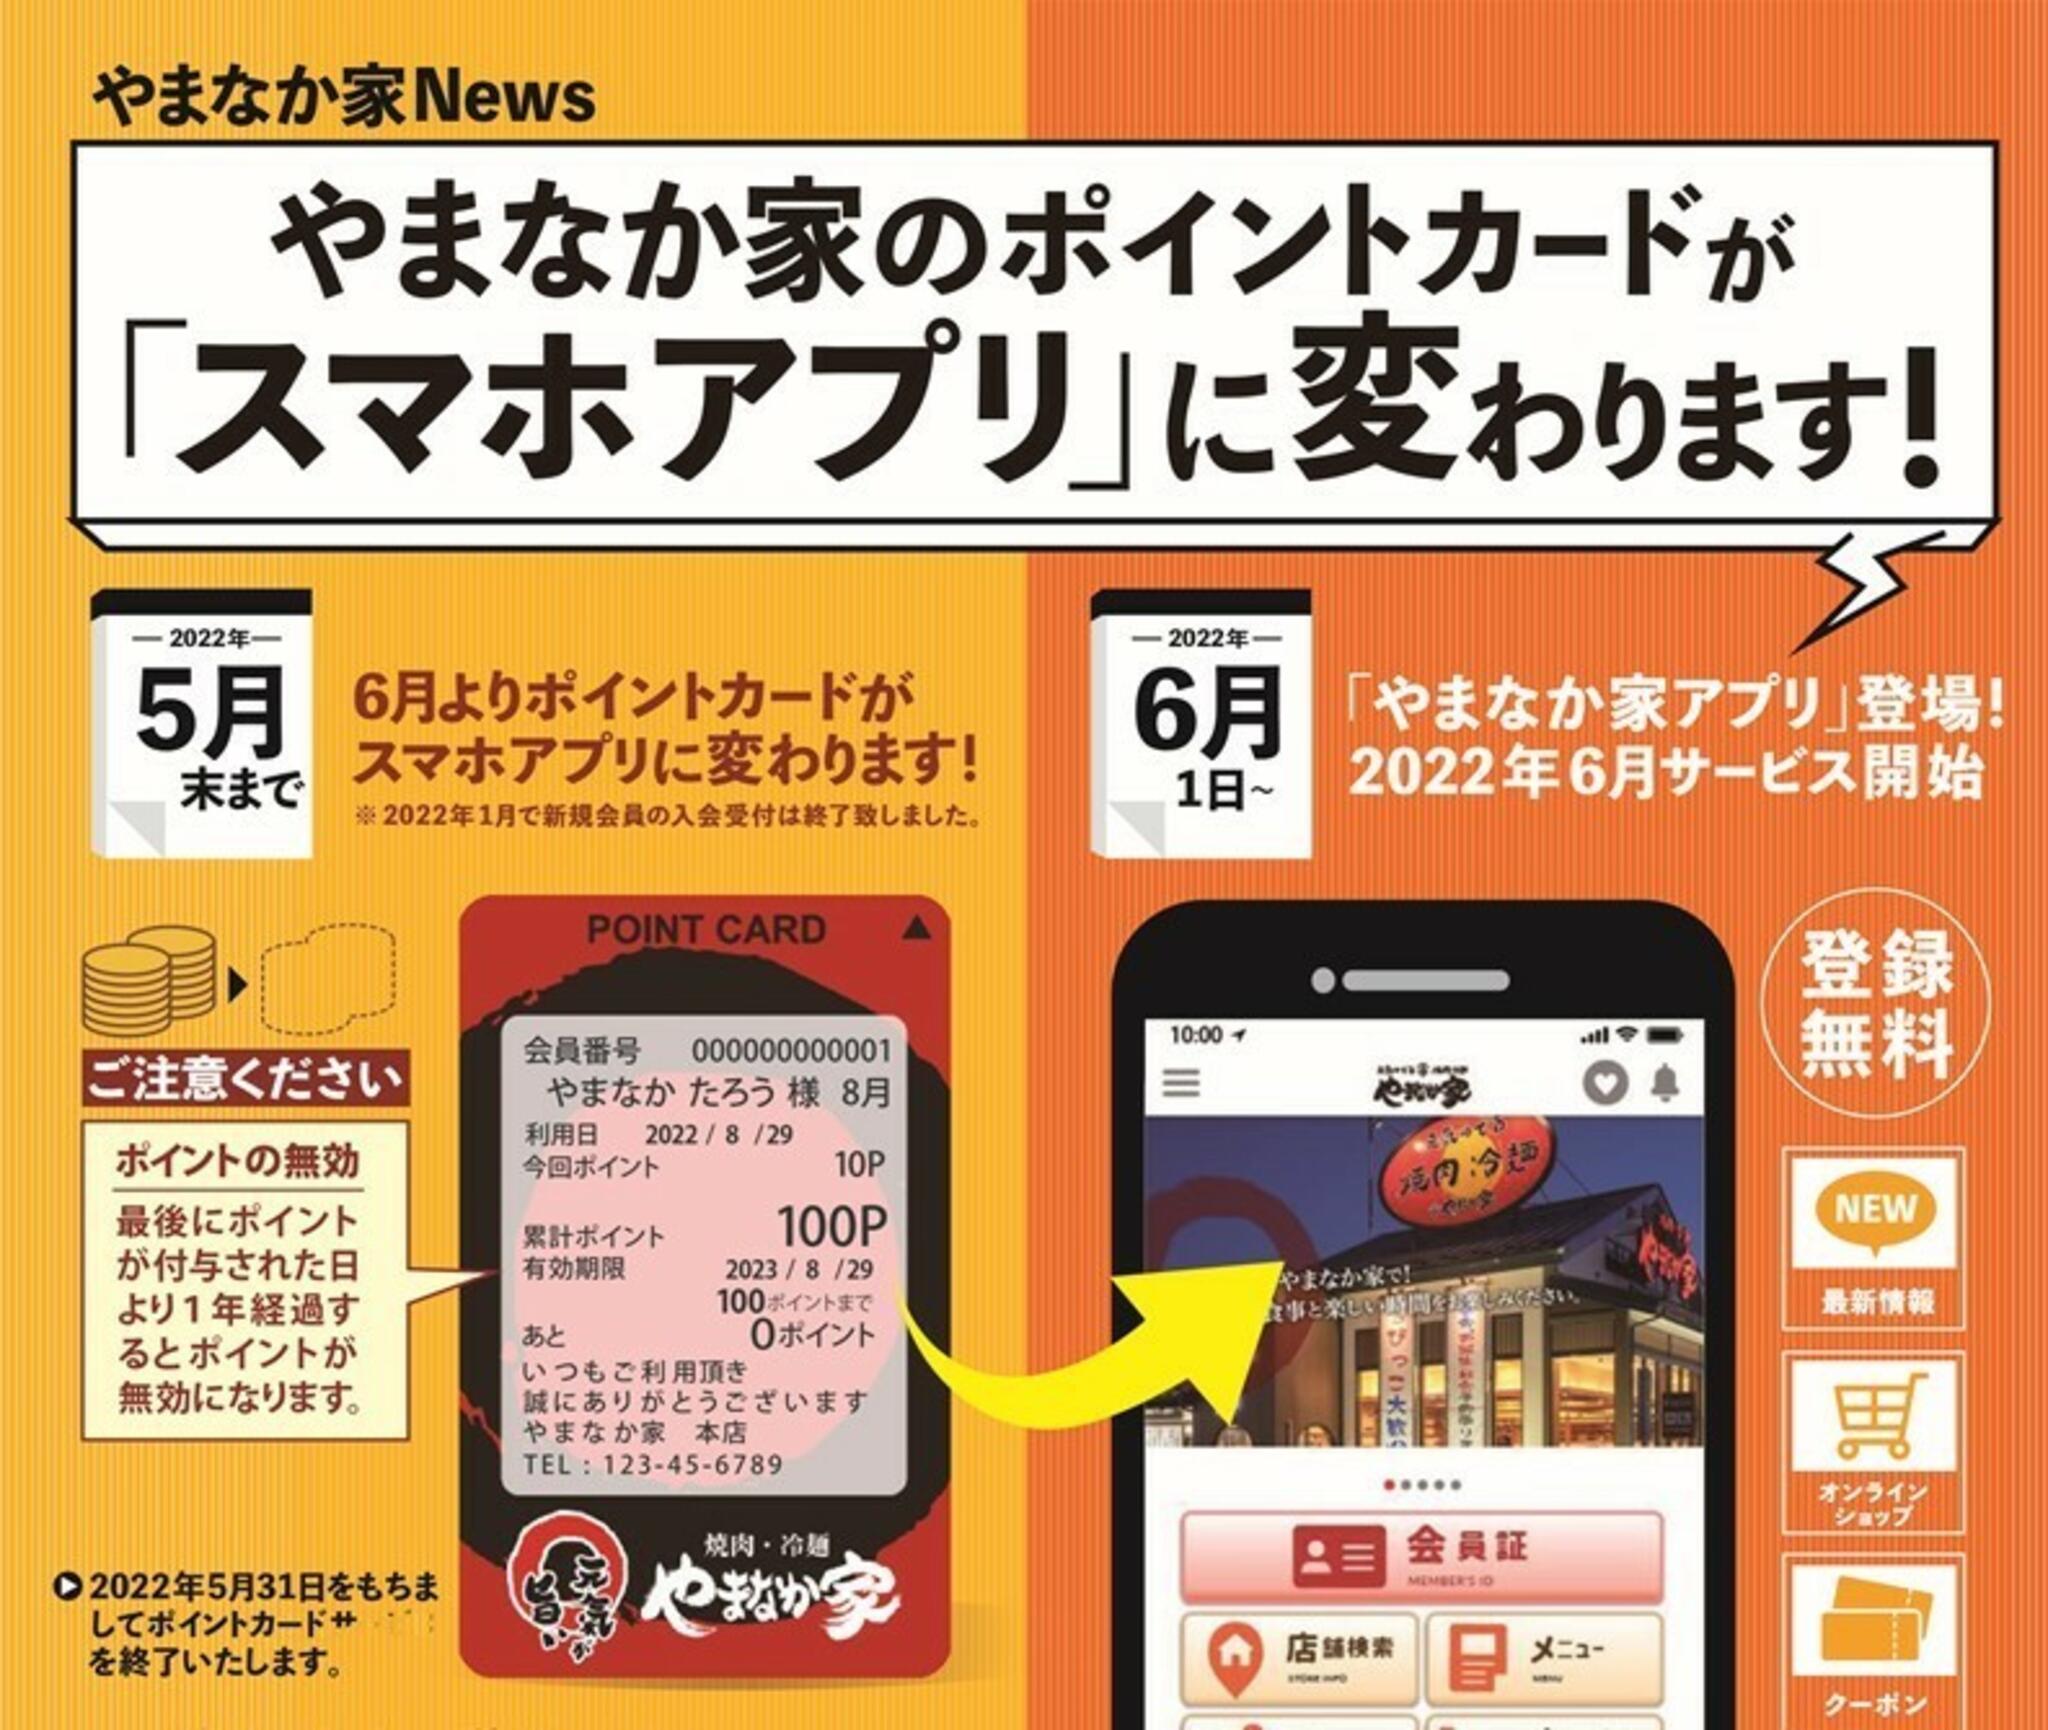 焼肉冷麺やまなか家 泉松森店からのお知らせ(【やまなか家のポイントカードがスマホアプリに変わります！】)に関する写真